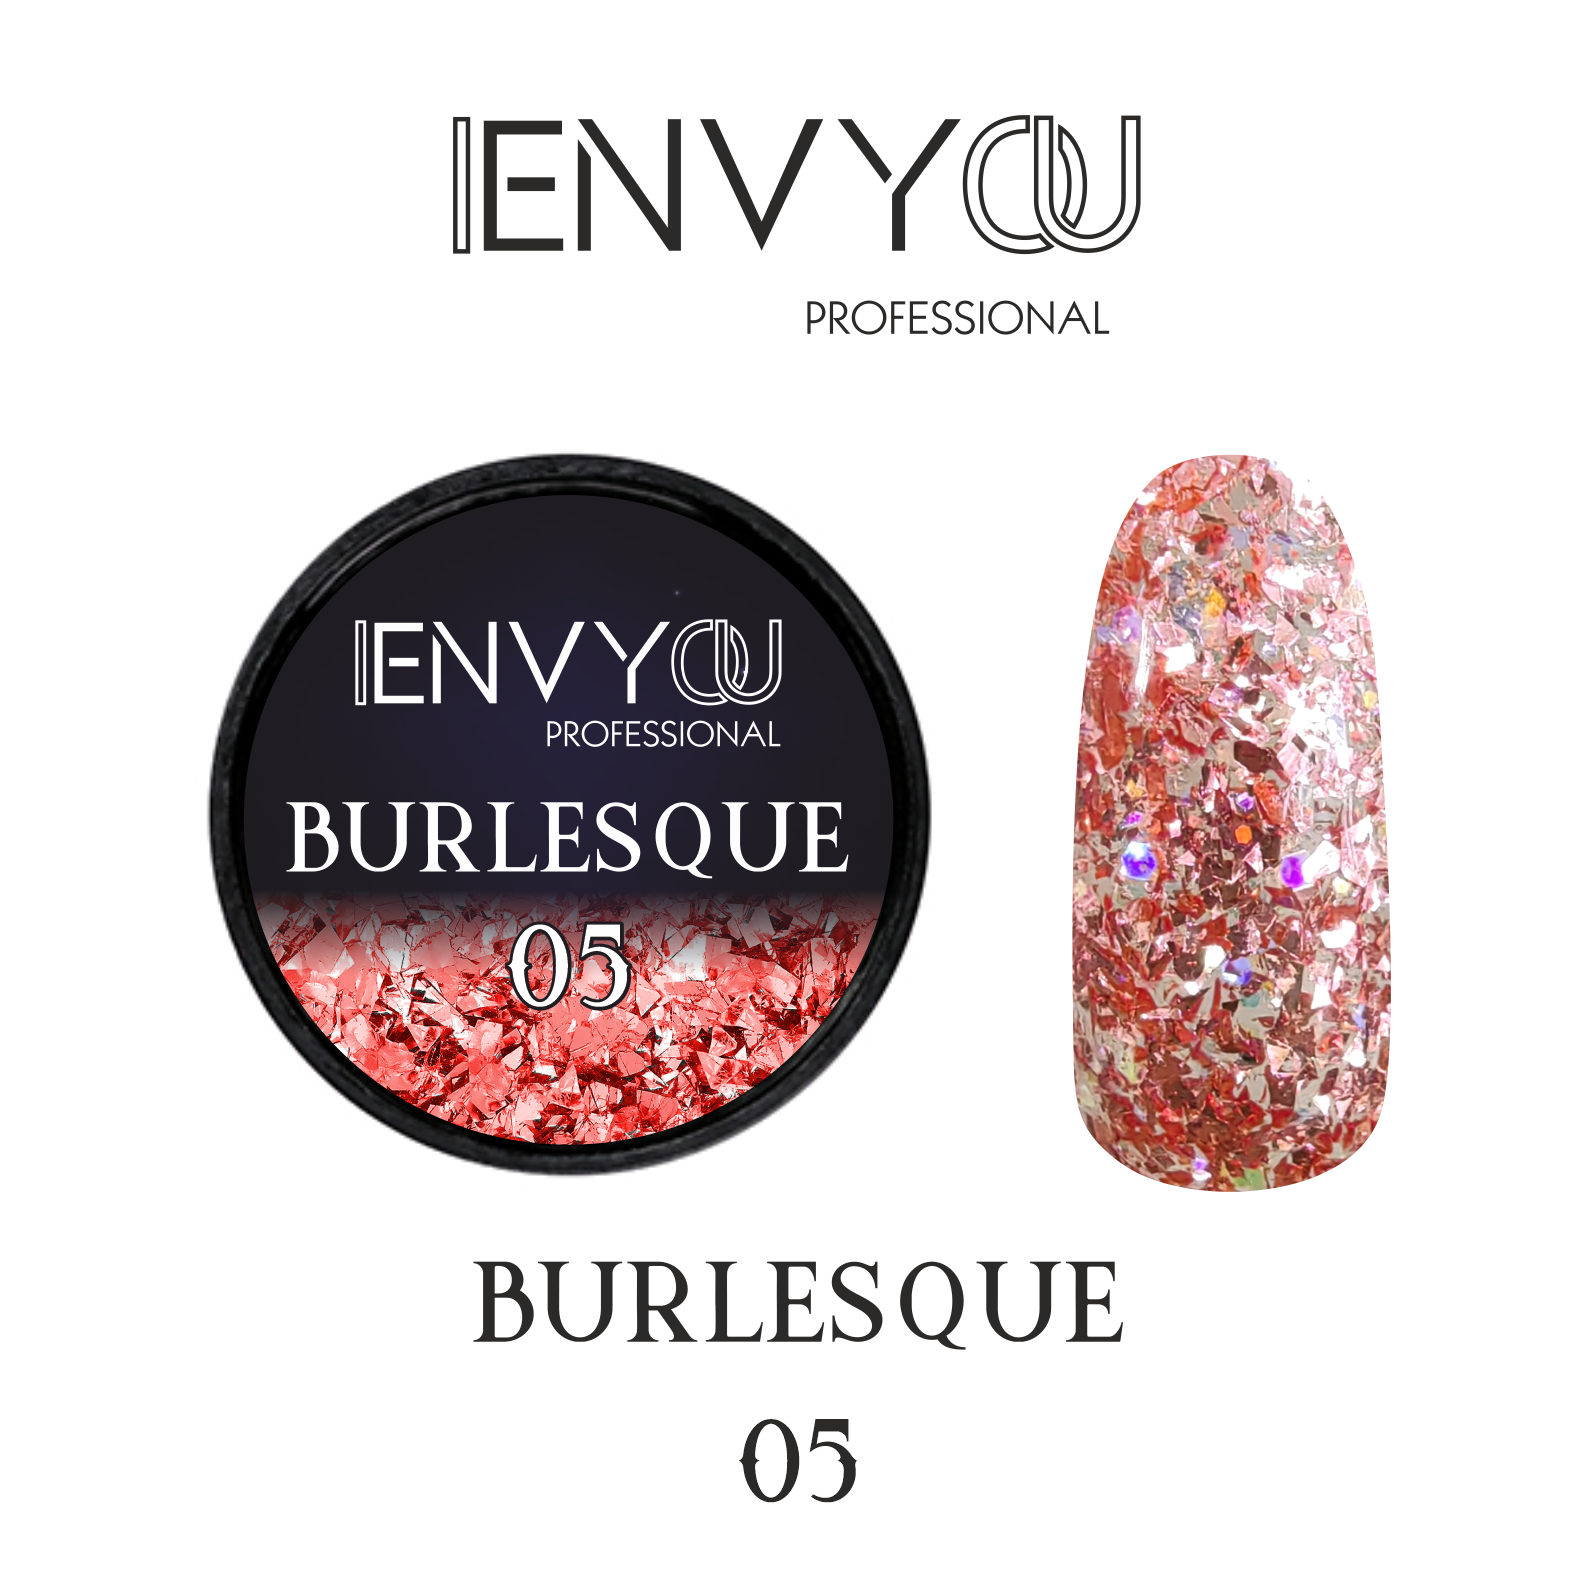 ENVY Burlesque 05 6g